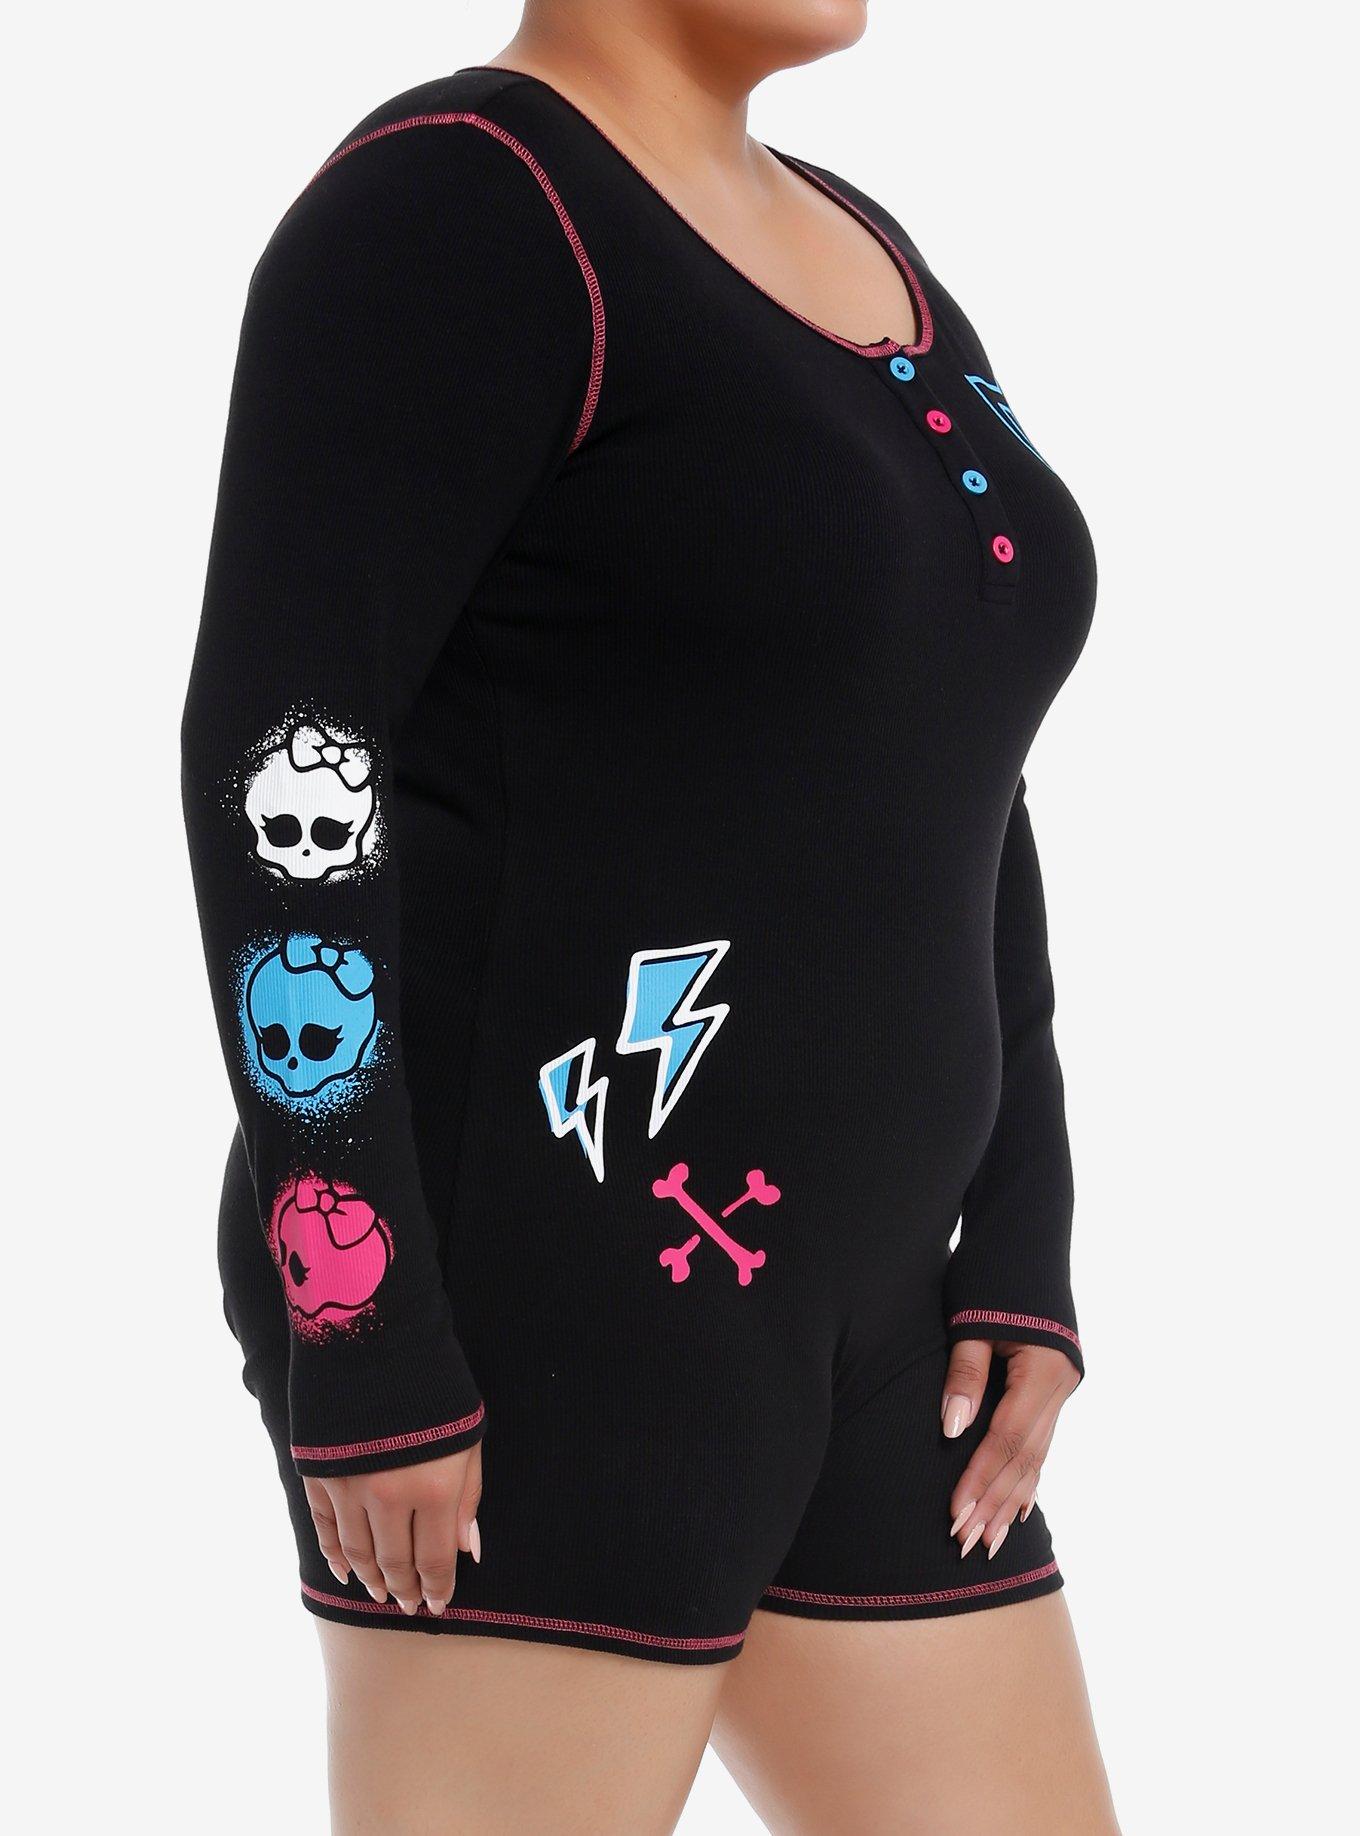 Monster High Icons Long-Sleeve Romper Plus Size, BLACK, alternate